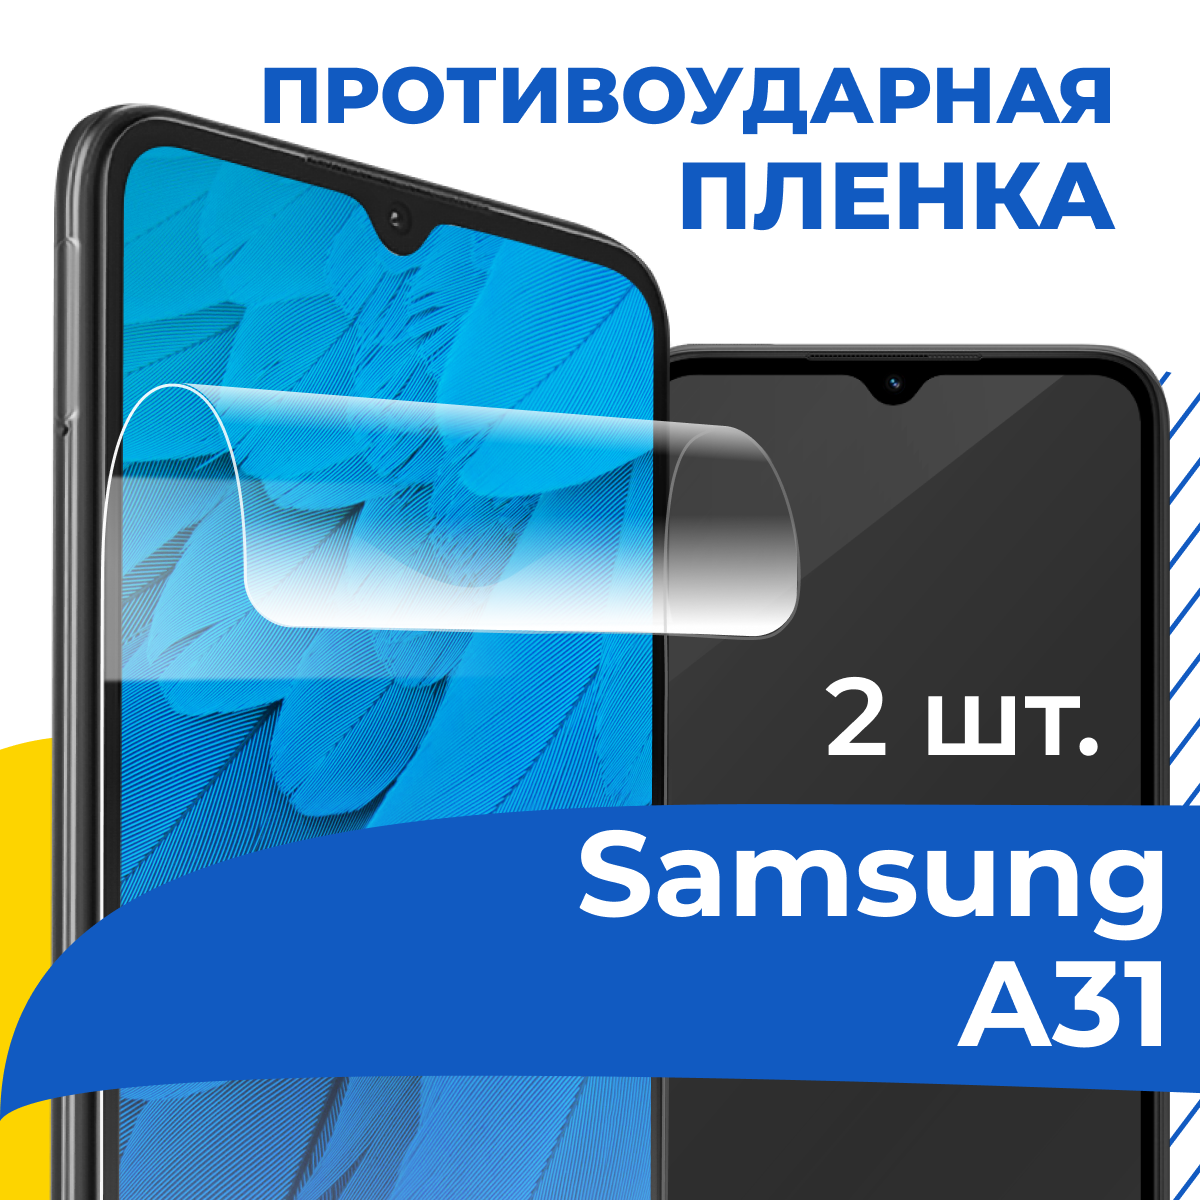 Комплект 2 шт. Гидрогелевая пленка для телефона Samsung Galaxy A31 / Противоударная защитная пленка на смартфон Самсунг А31 / Самовосстанавливающаяся пленка